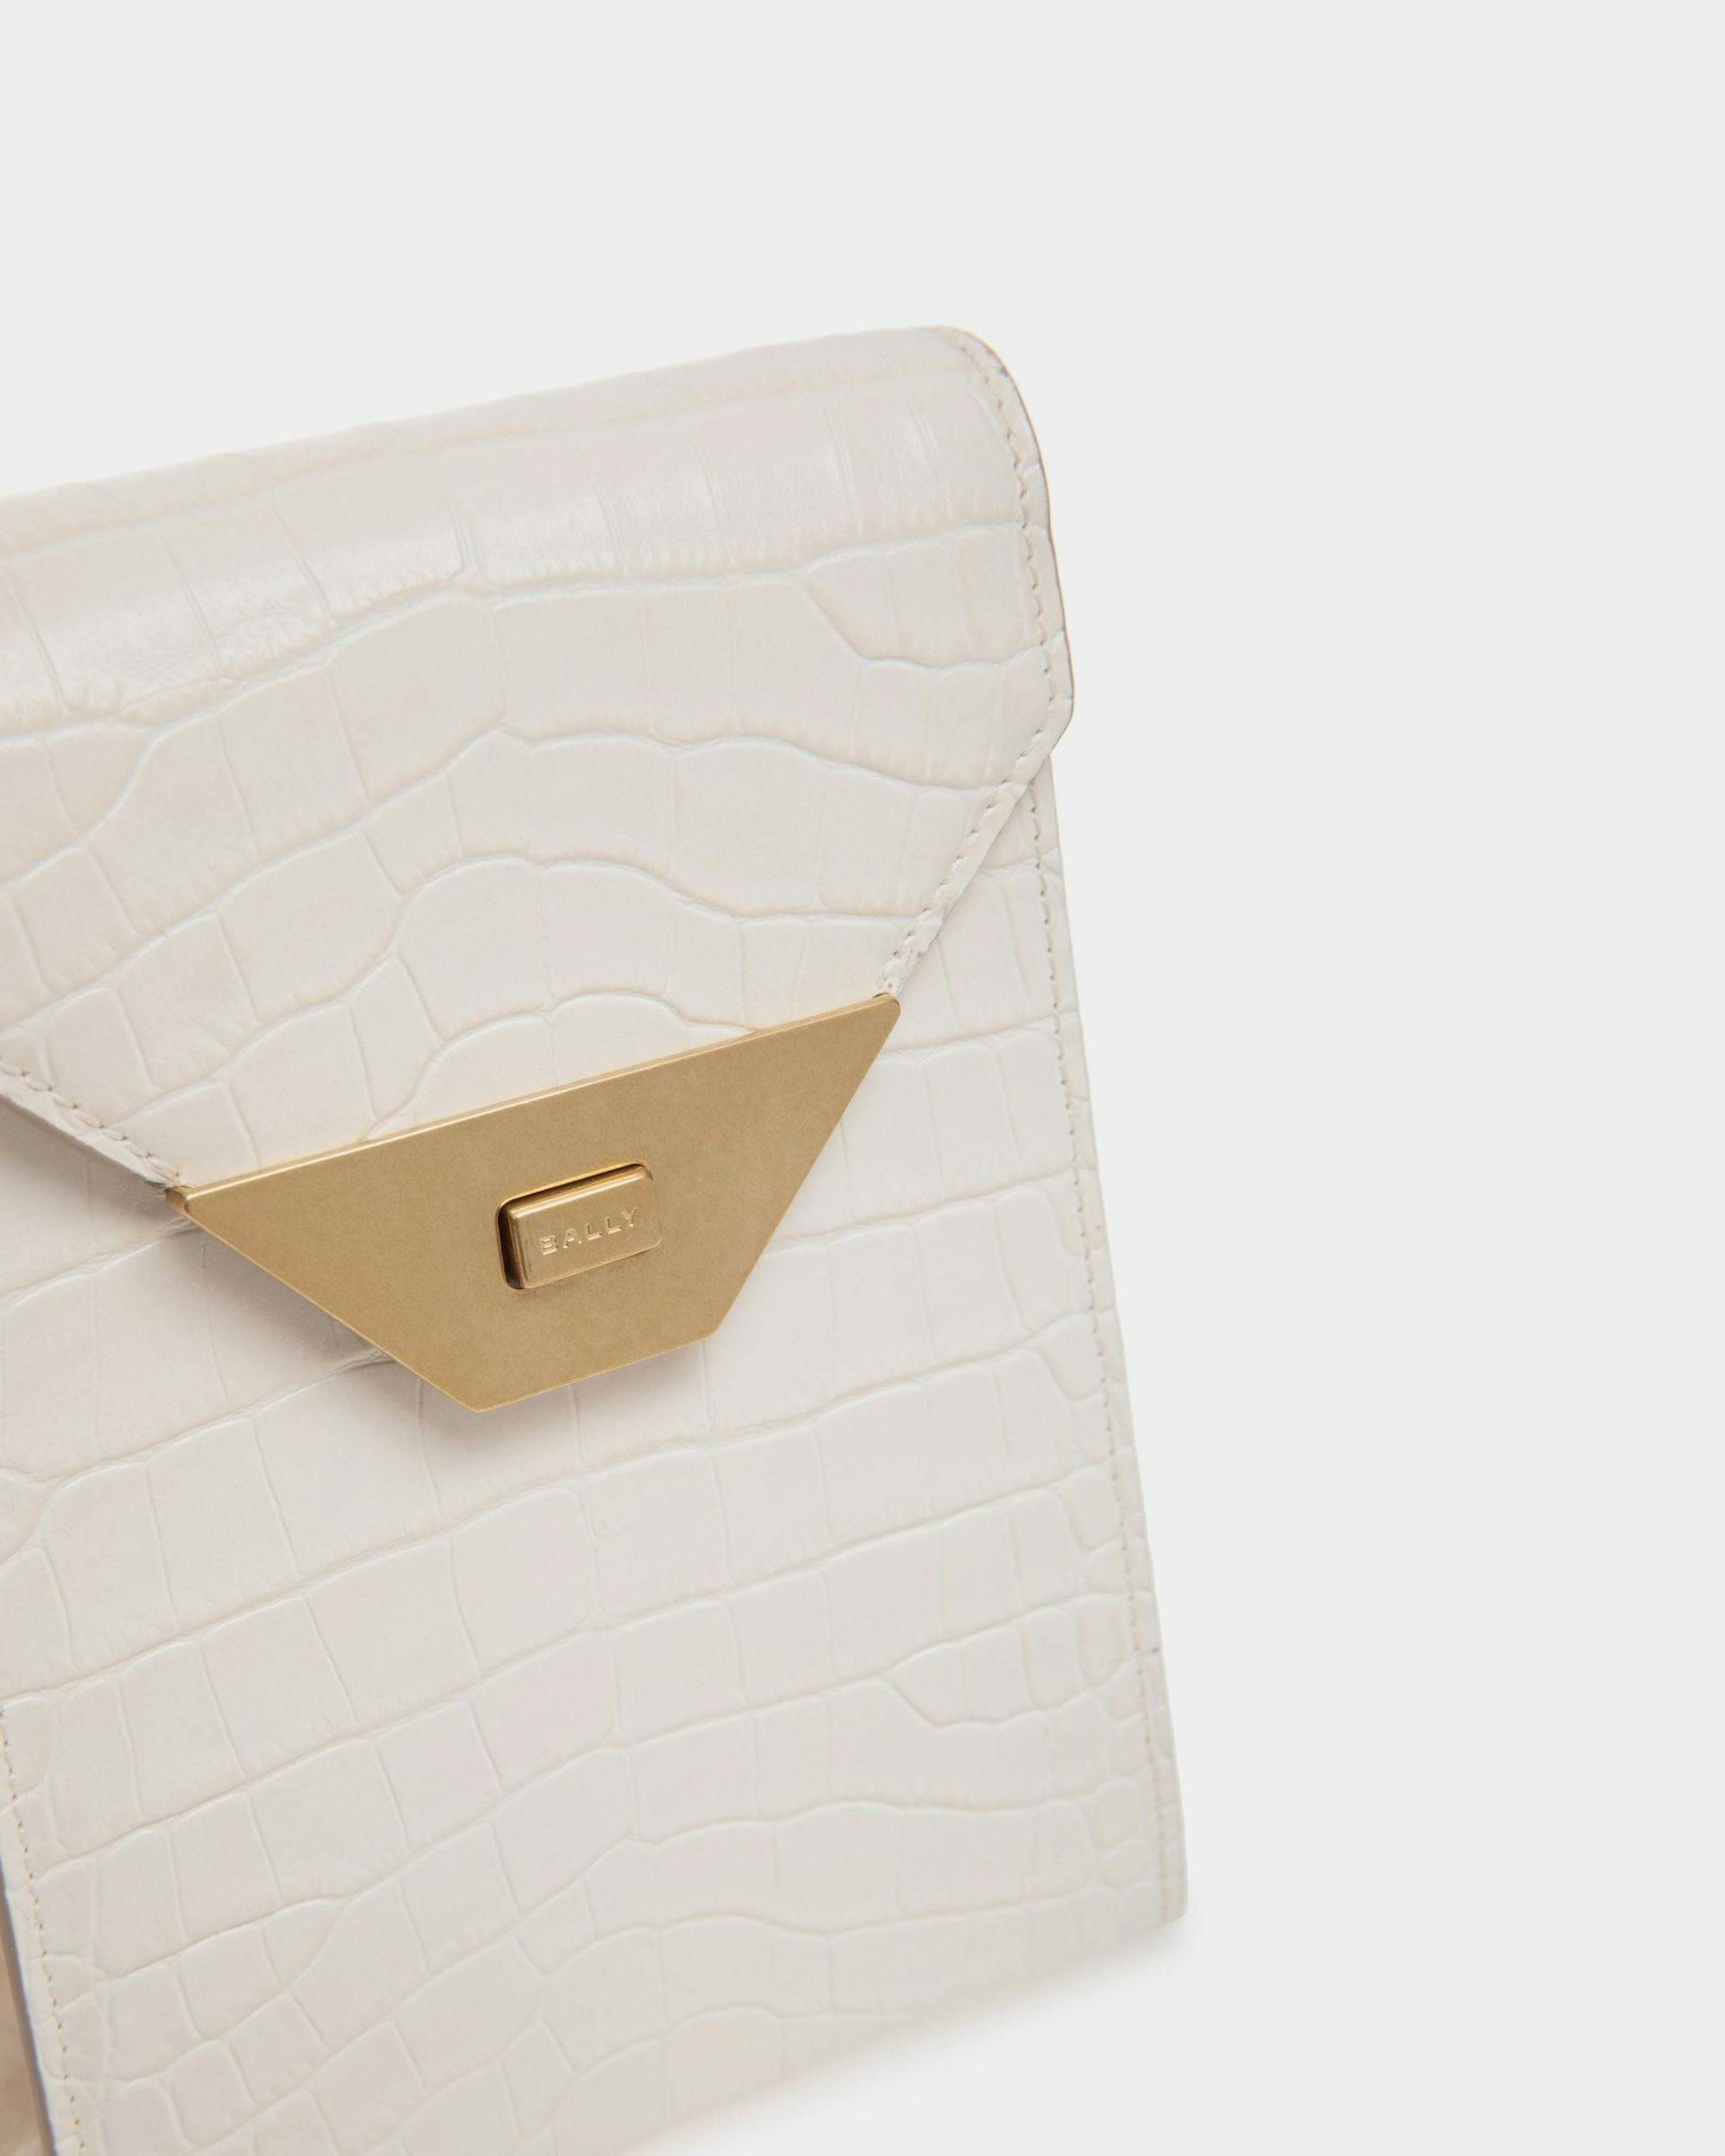 Women's Tilt Phone Bag in White Crocodile Print Leather | Bally | Still Life Detail